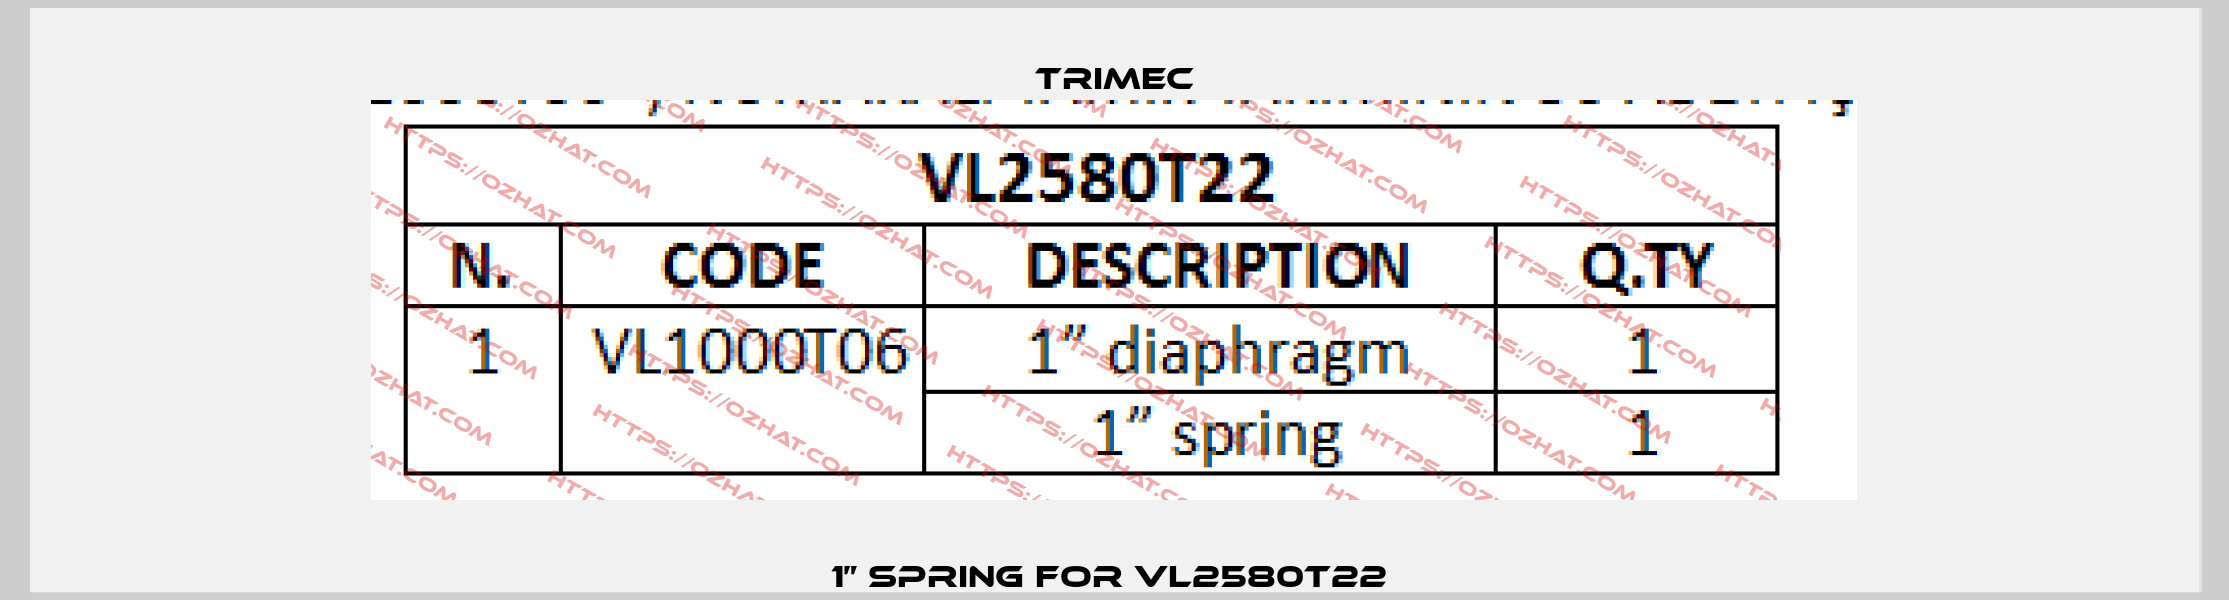 1” spring For VL2580T22  Trimec